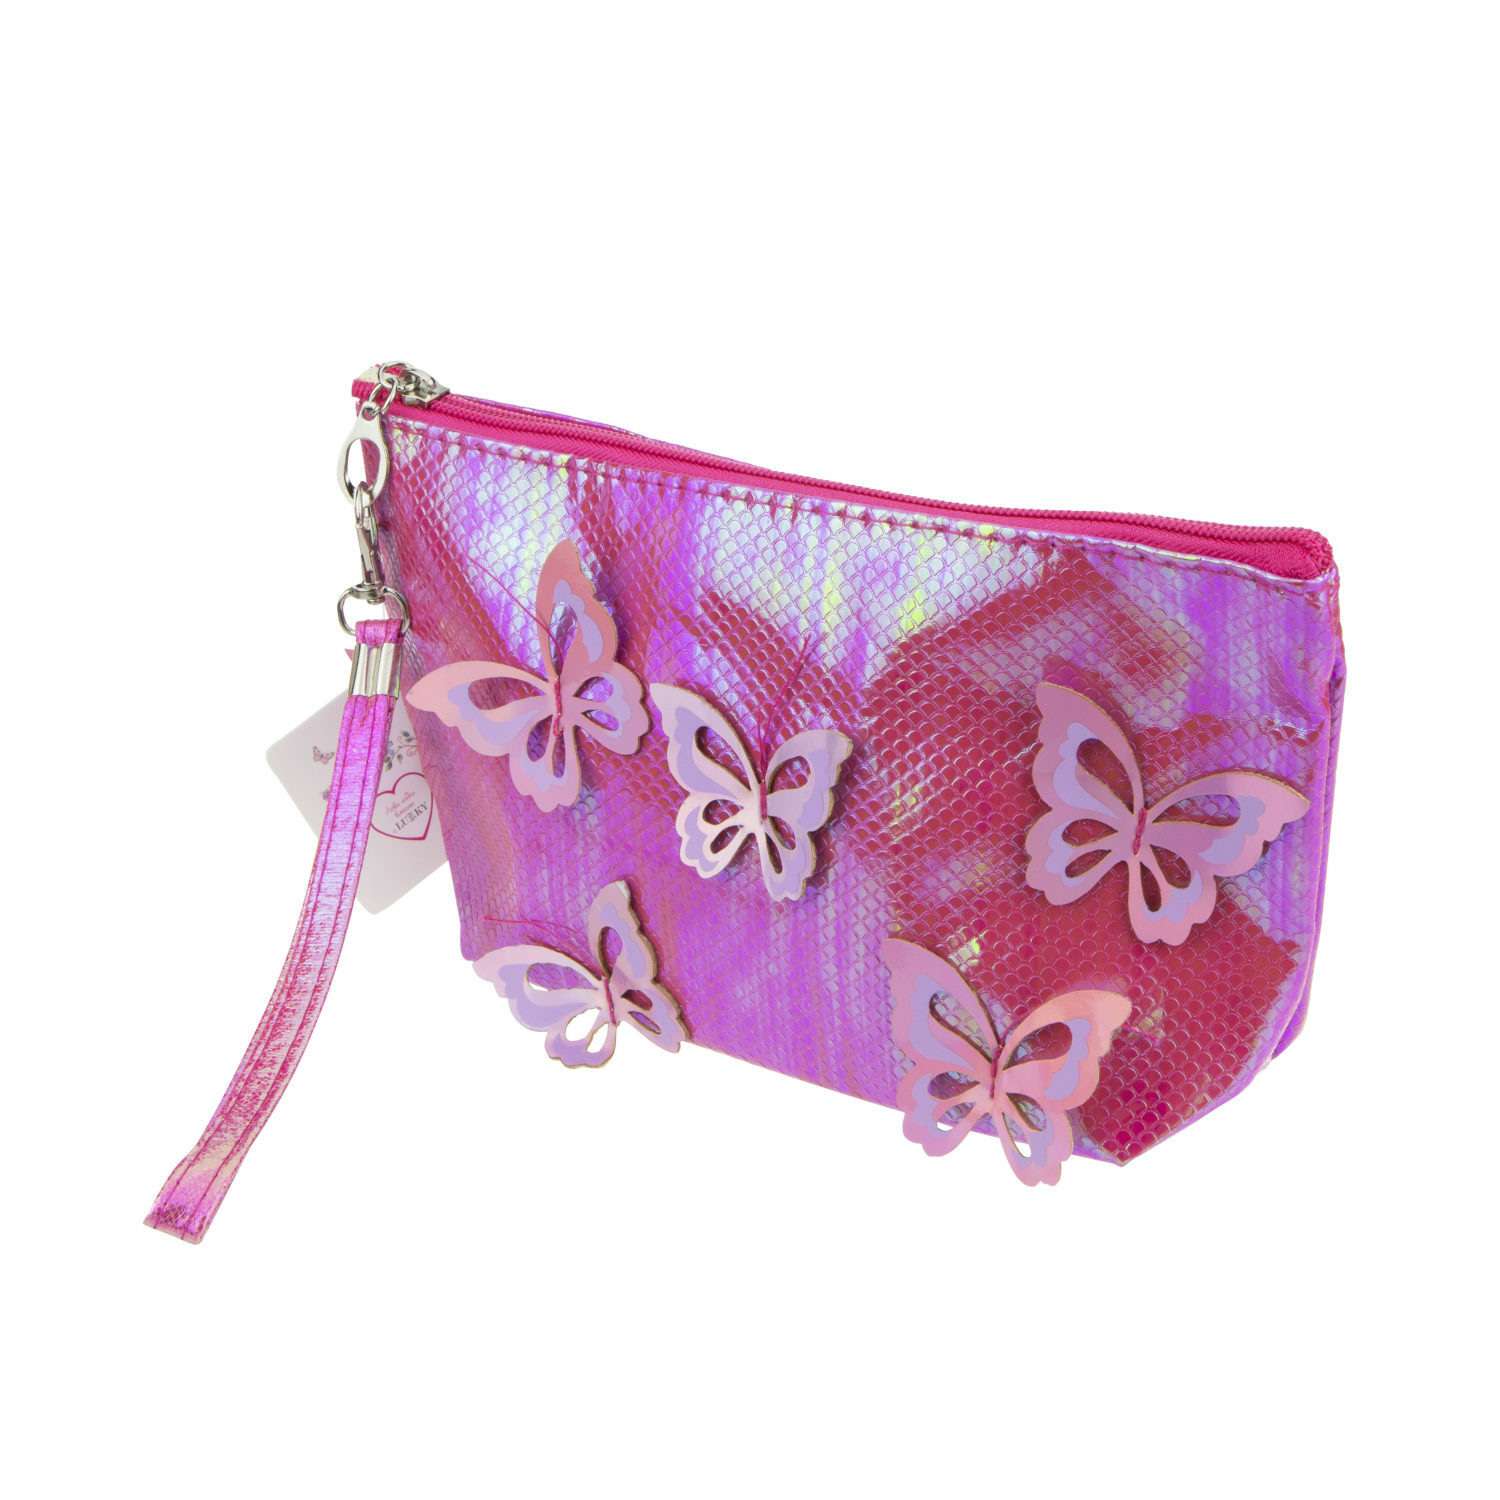 Пенал- косметичка Lukky с голографическими накладными бабочками розовая 24х13 см - фото 8